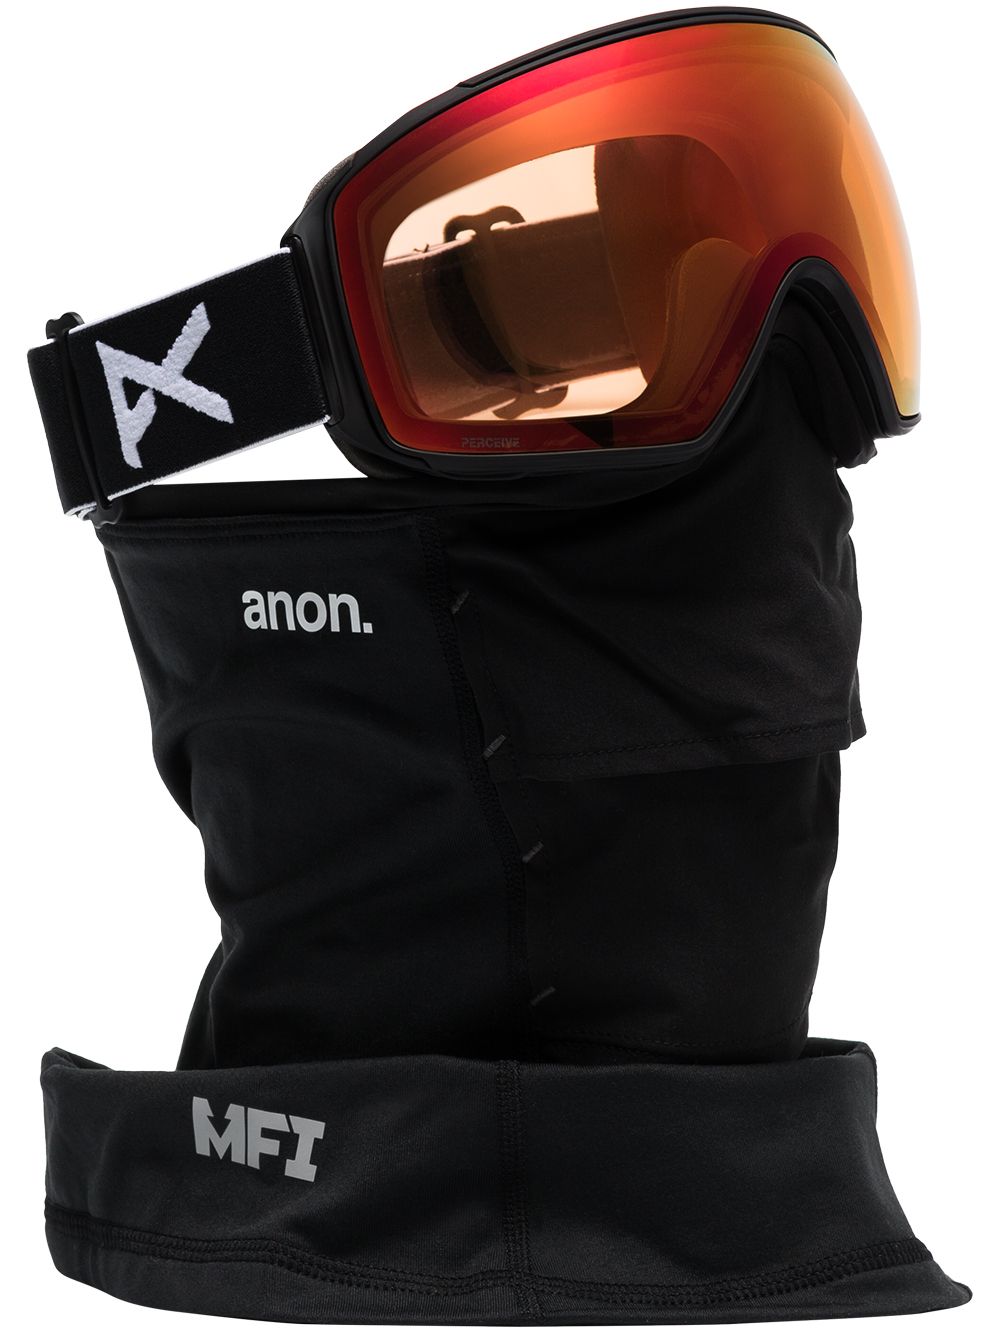 фото Anon лыжные очки m4 toric mfi